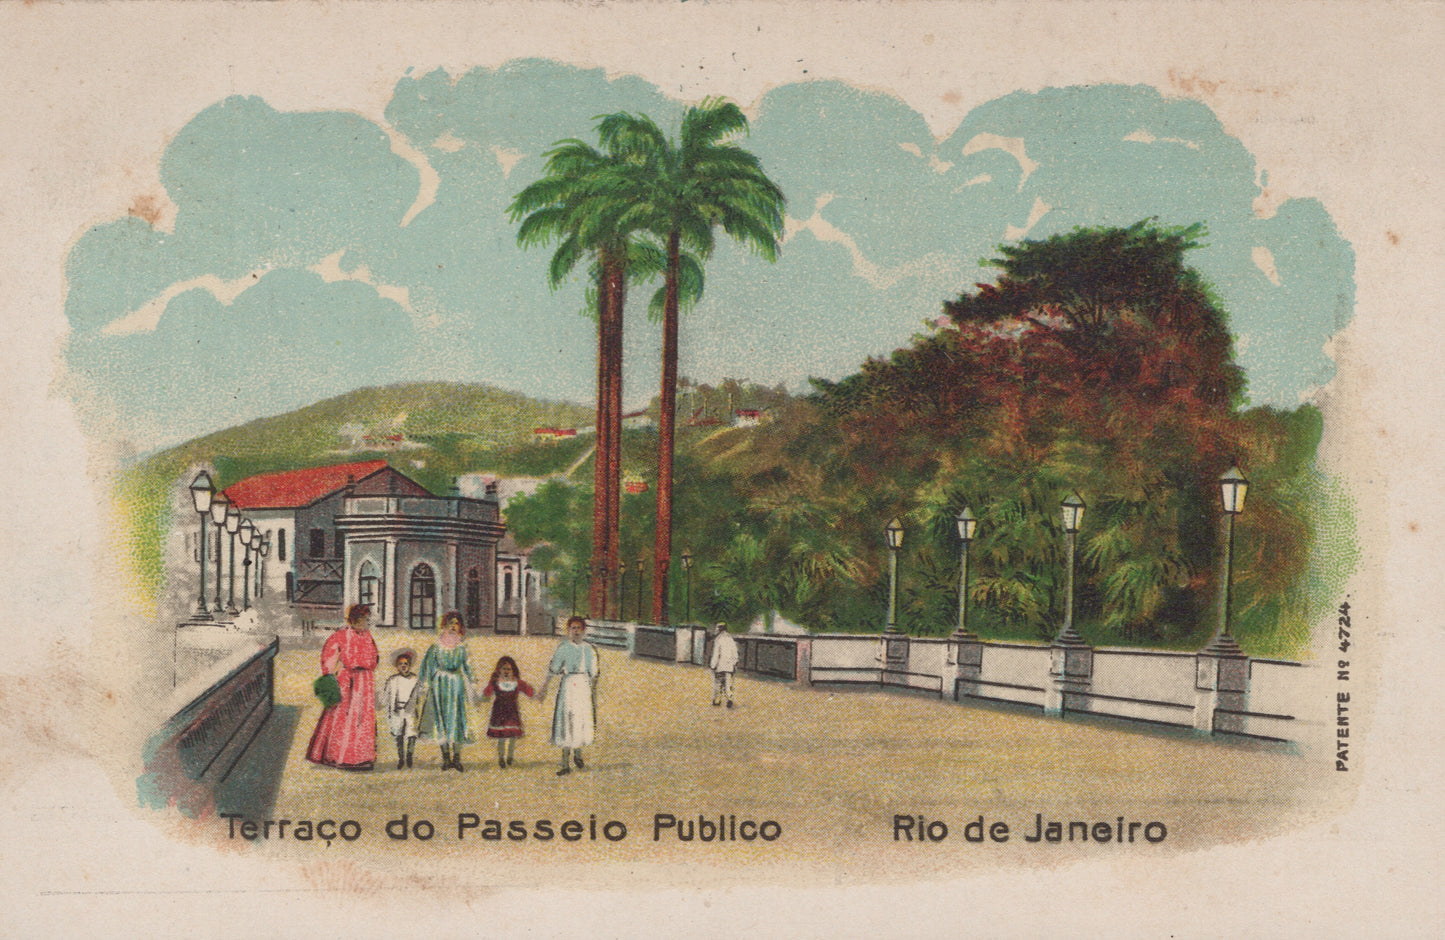 Terraço do Passeio Público, Rio de Janeiro